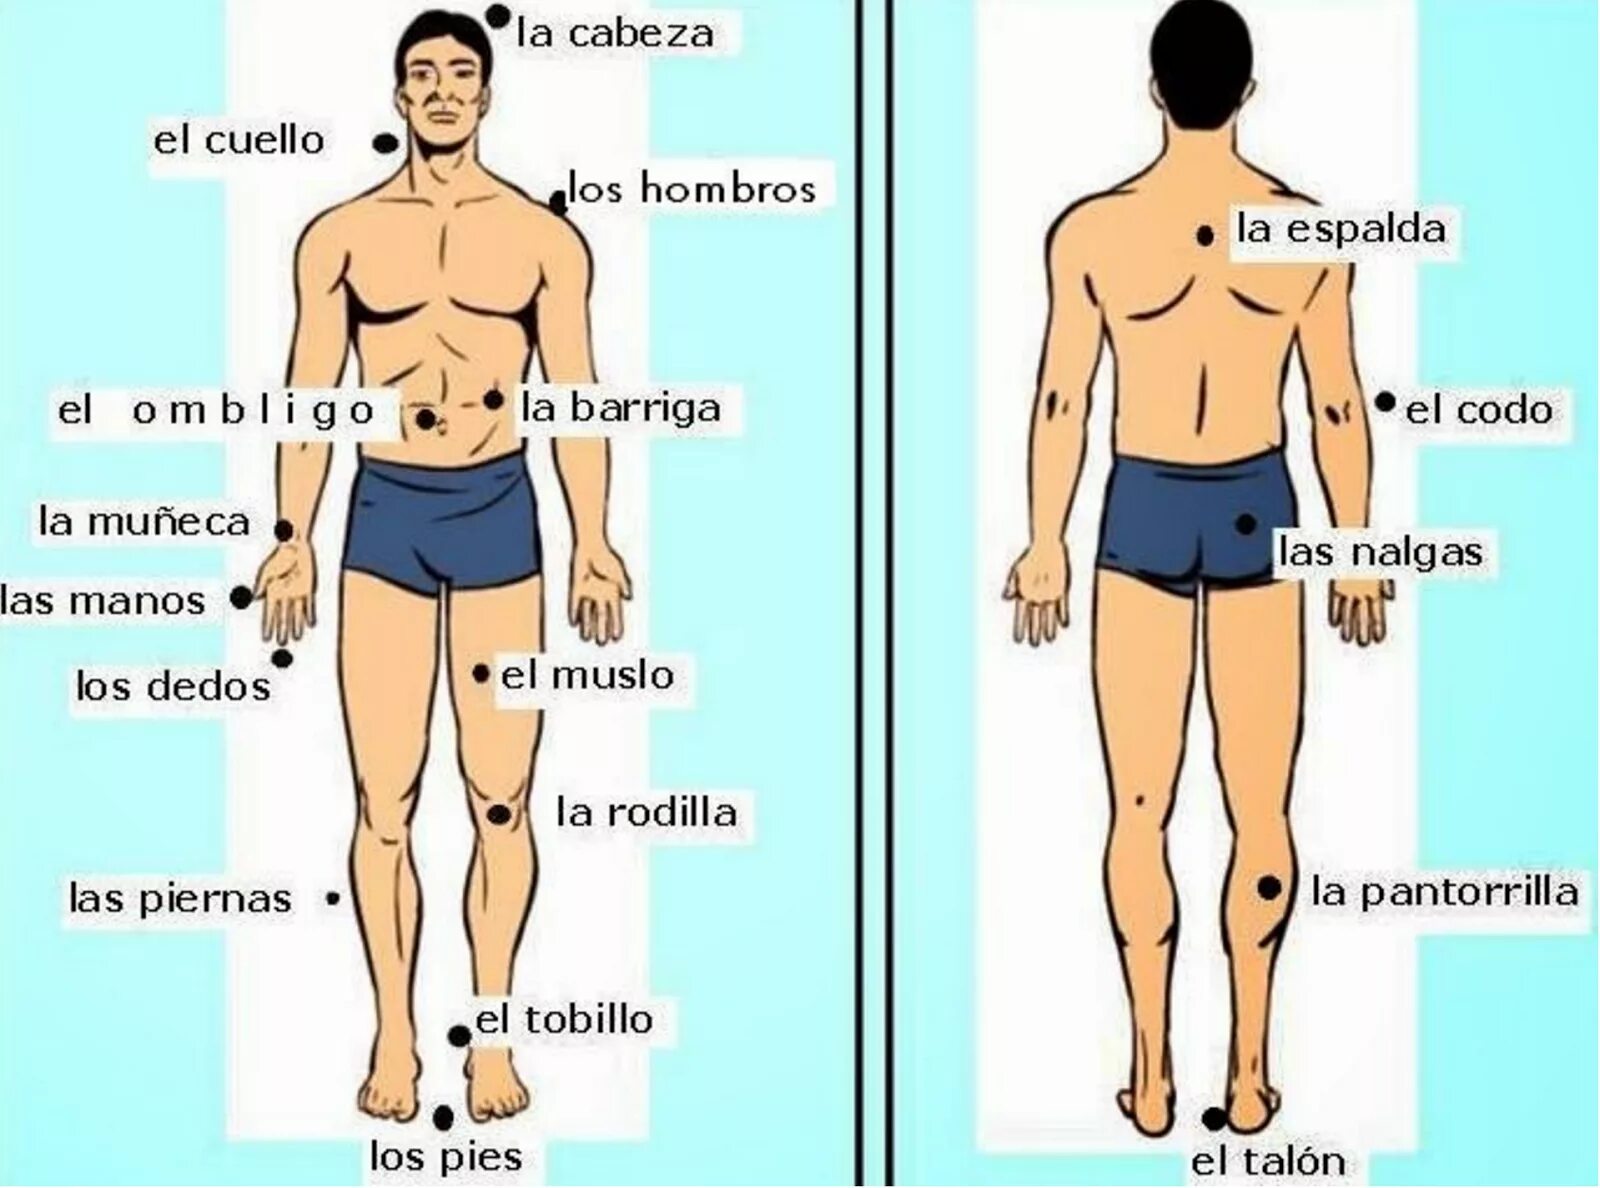 Части тела на испанском языке. Части тела человека на испанском. Название частей тела. Названия частей тела на испанском.